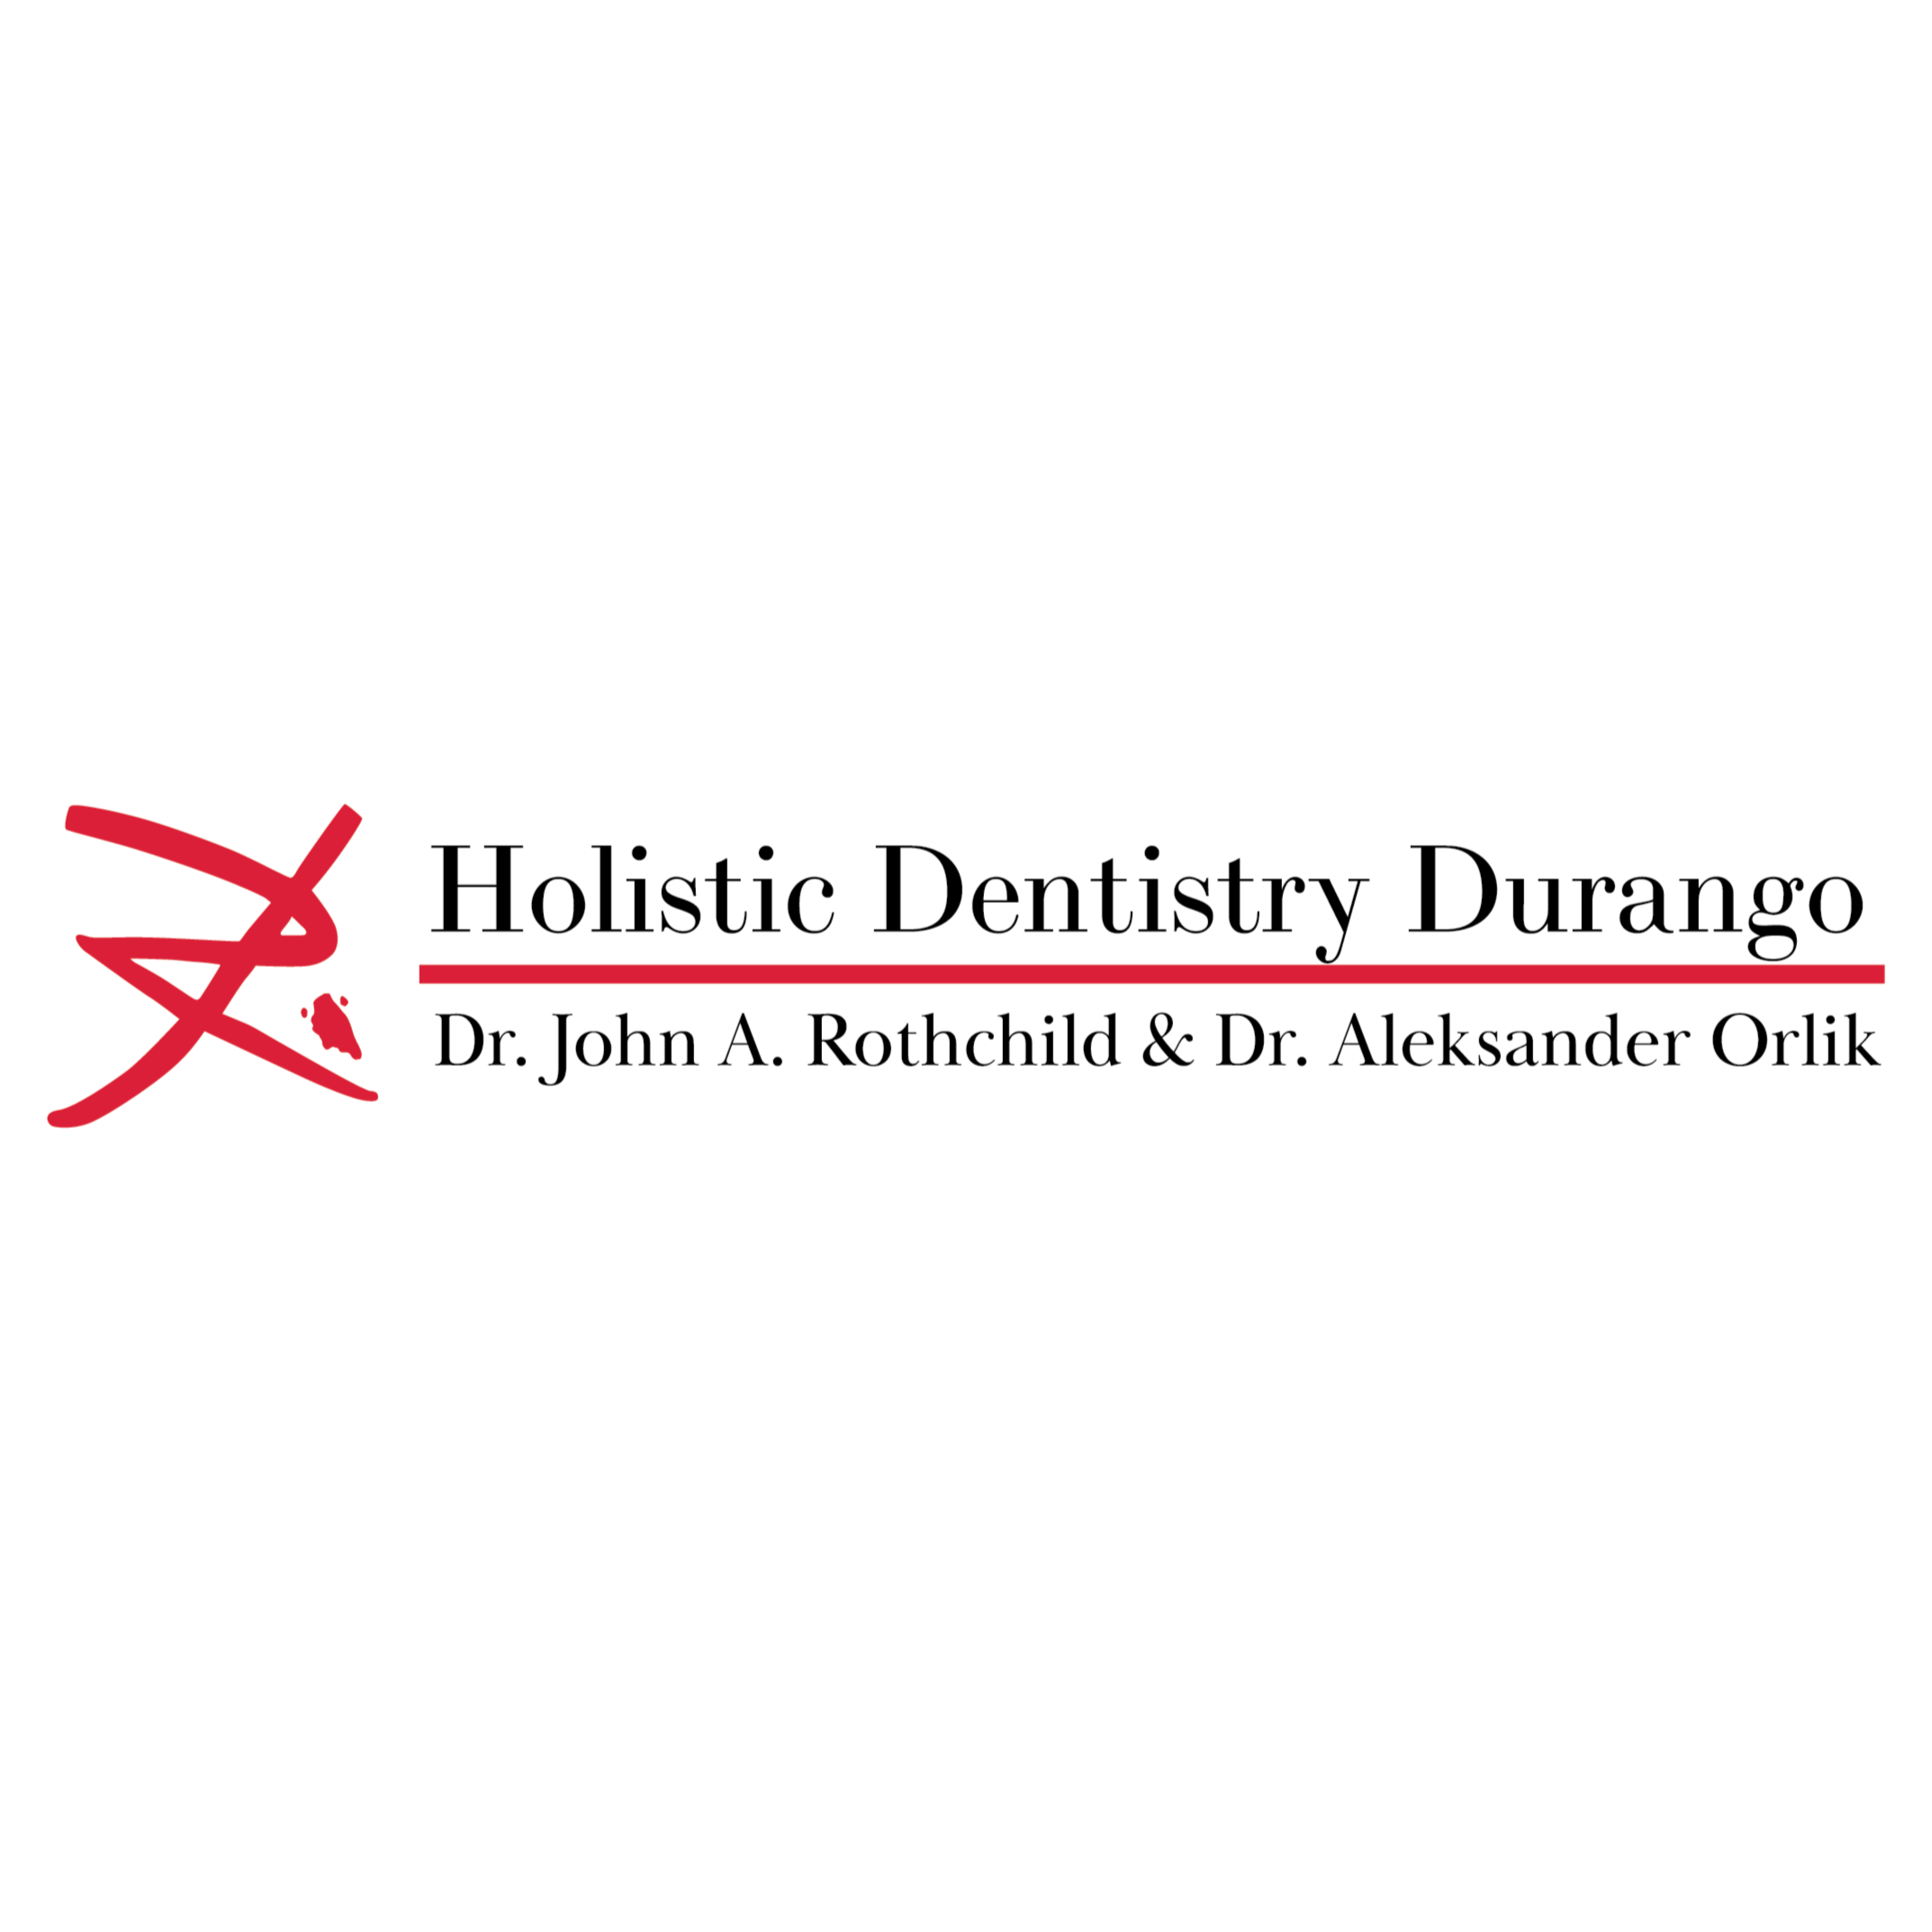 Holistic Dentistry Durango